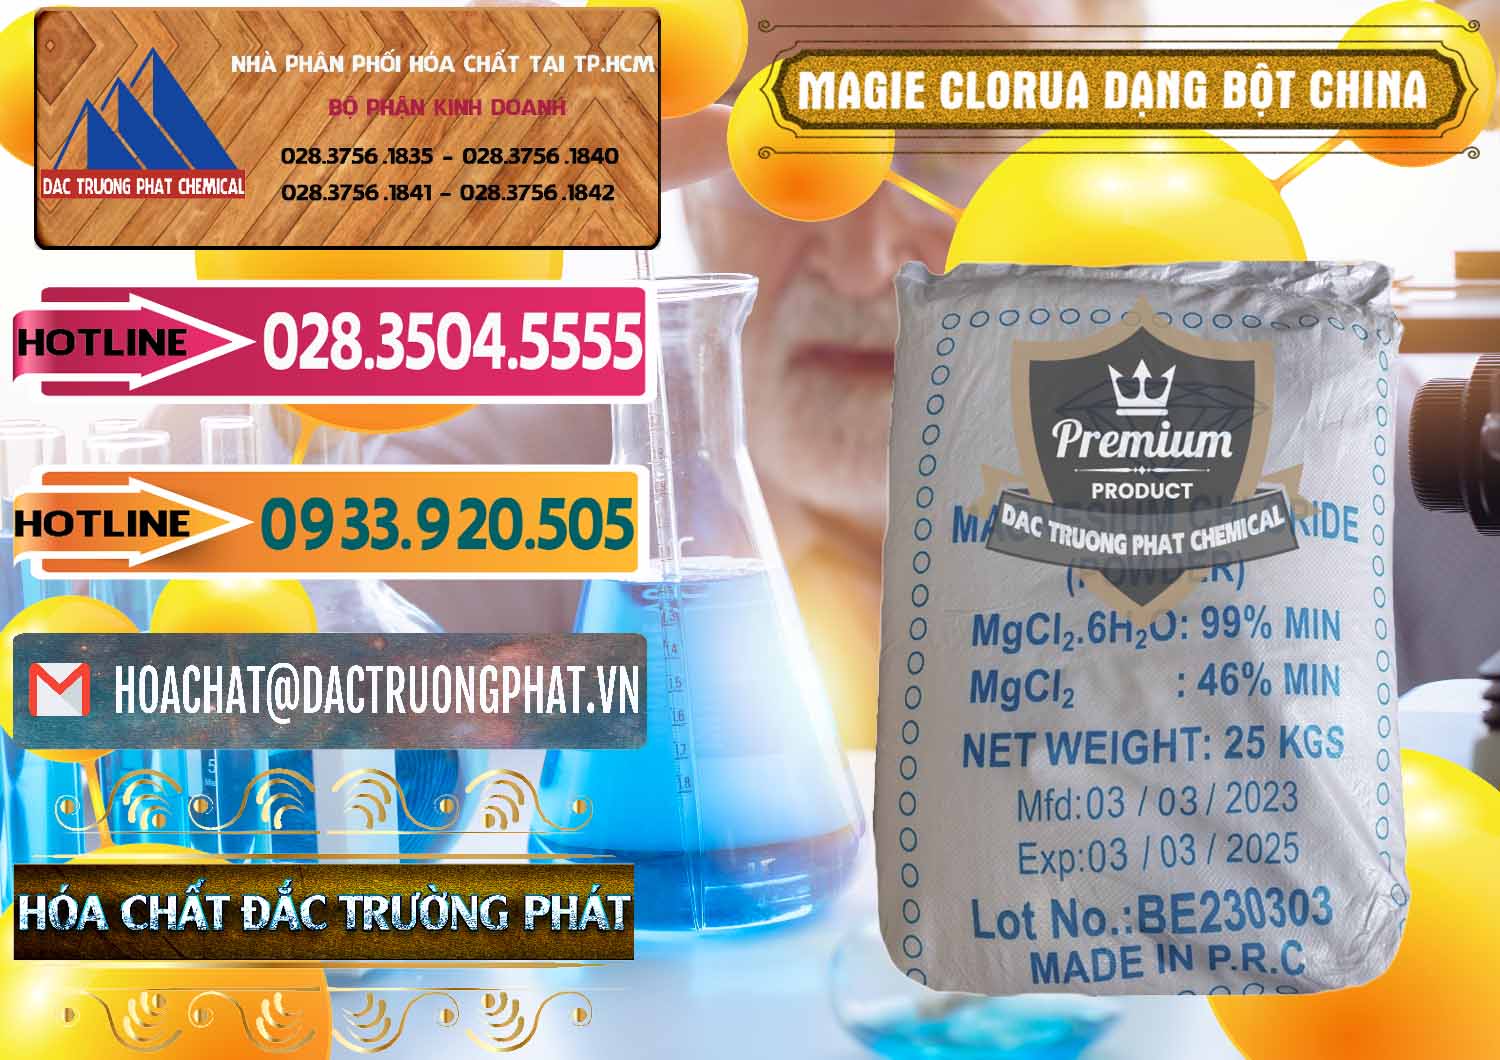 Cty chuyên bán _ cung ứng Magie Clorua – MGCL2 96% Dạng Bột Logo Kim Cương Trung Quốc China - 0387 - Cty chuyên phân phối & cung ứng hóa chất tại TP.HCM - dactruongphat.vn